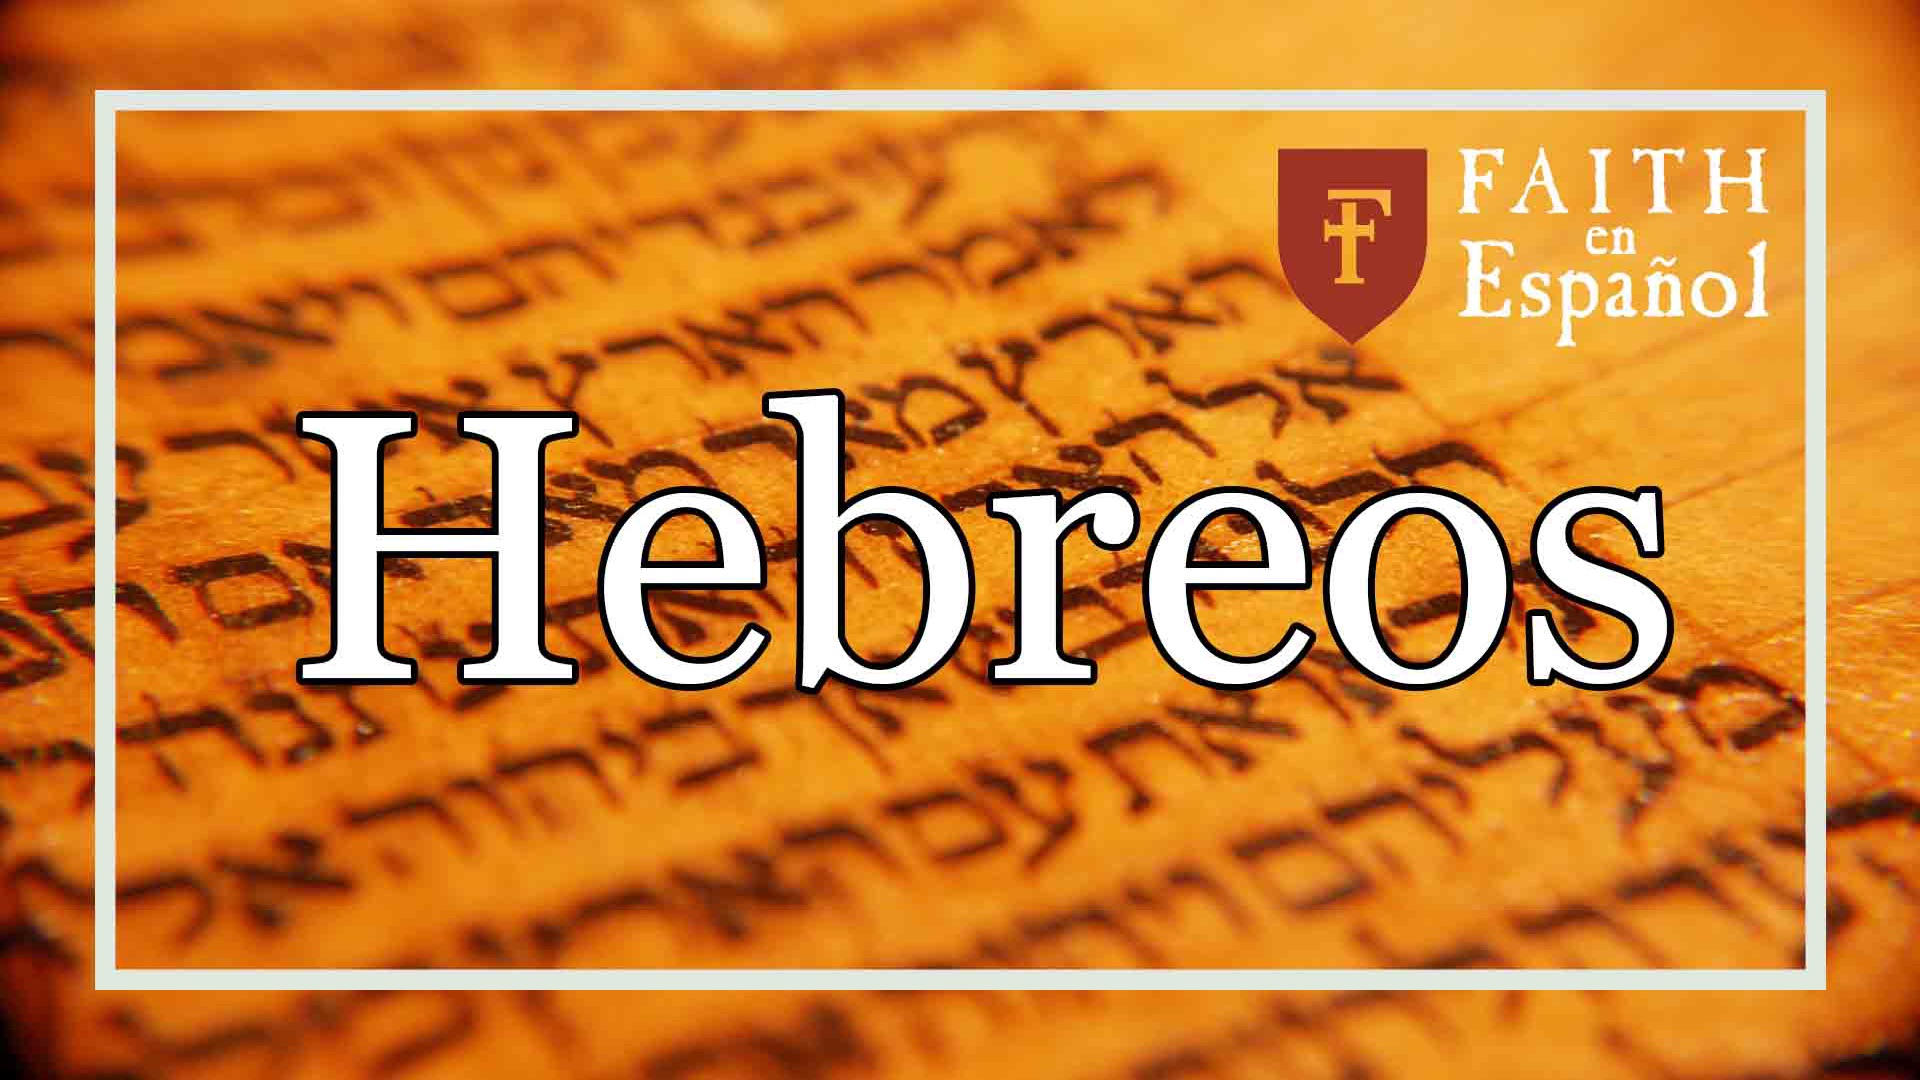 La Adoración que Dios Desea  (Hebreos 11:4)